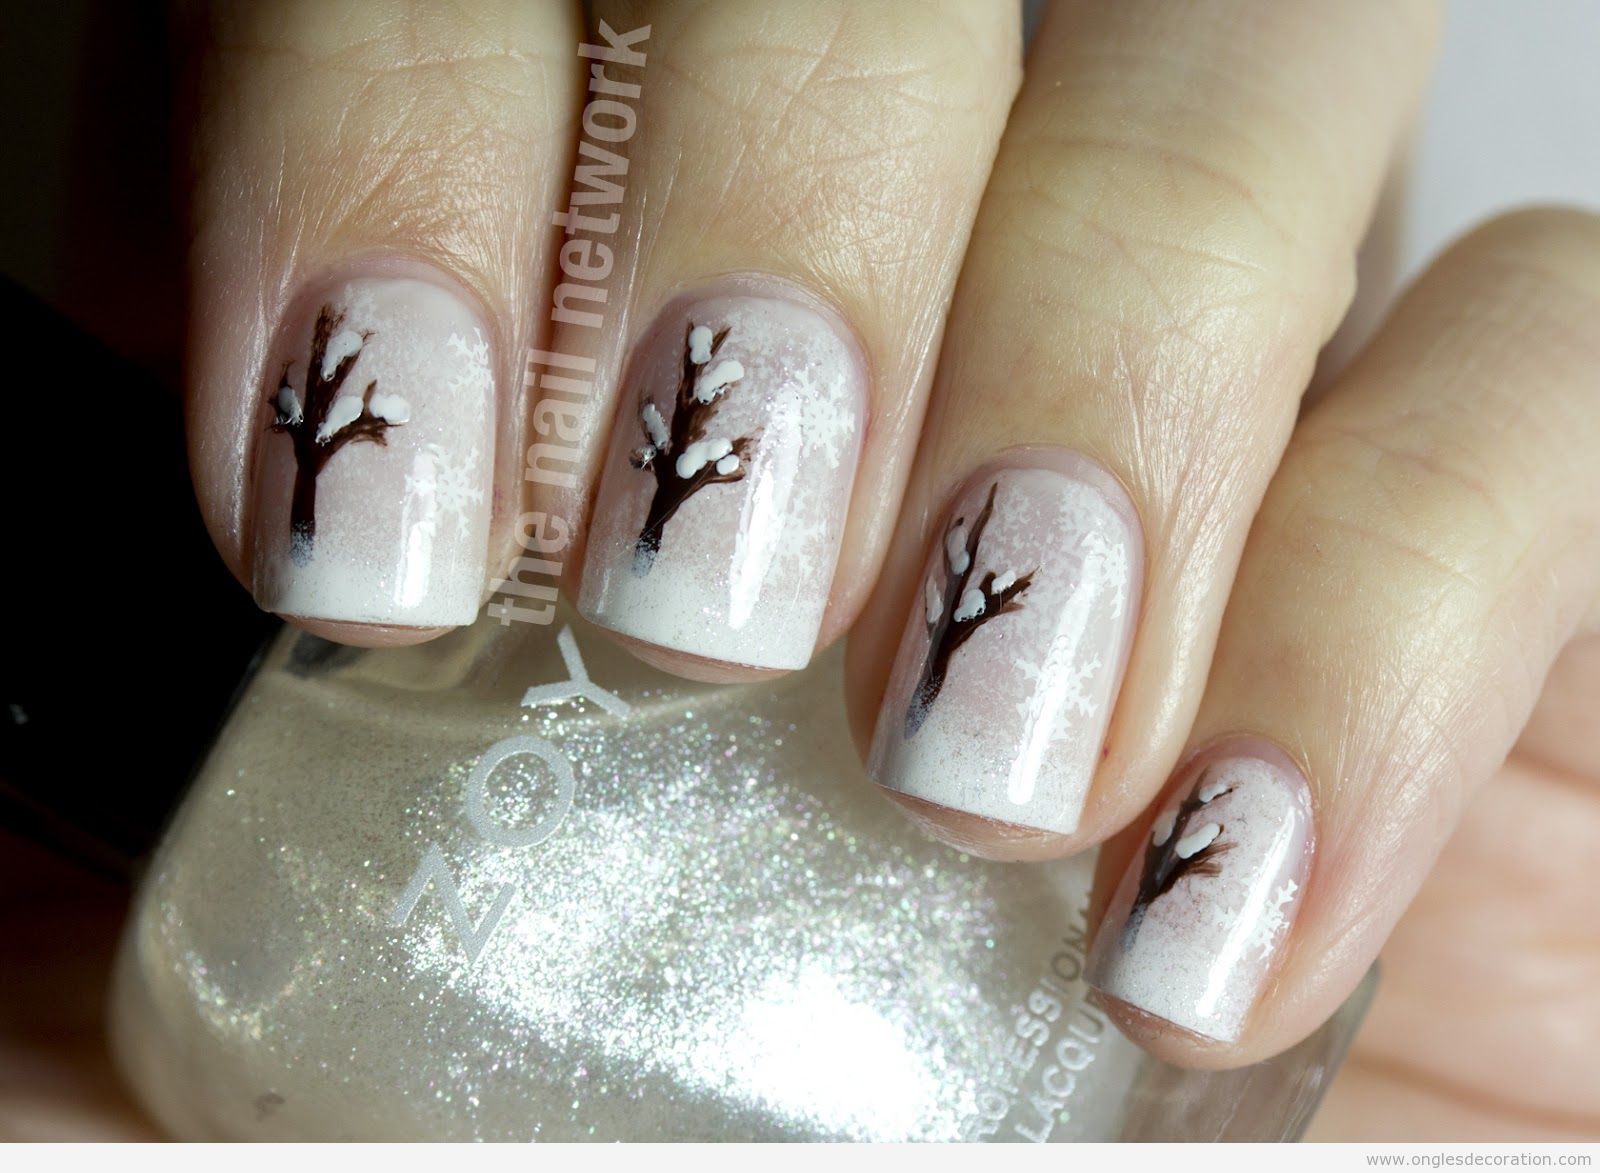 Déco sur les ongles avec un dessin d'arbre en hivern